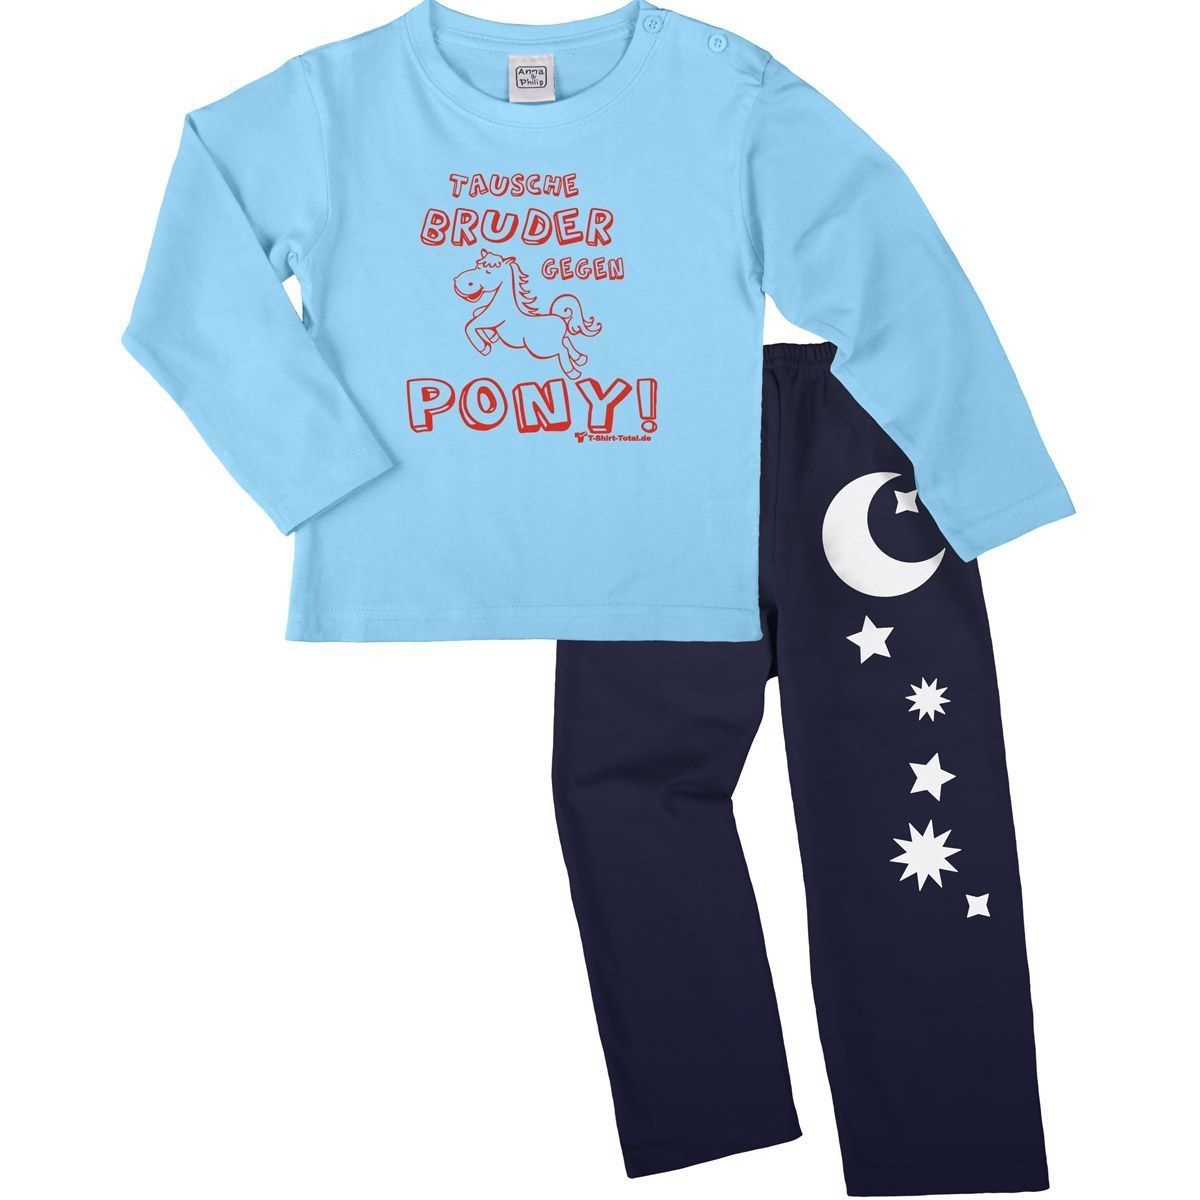 Tausche Bruder gegen Pony Pyjama Set hellblau / navy 110 / 116